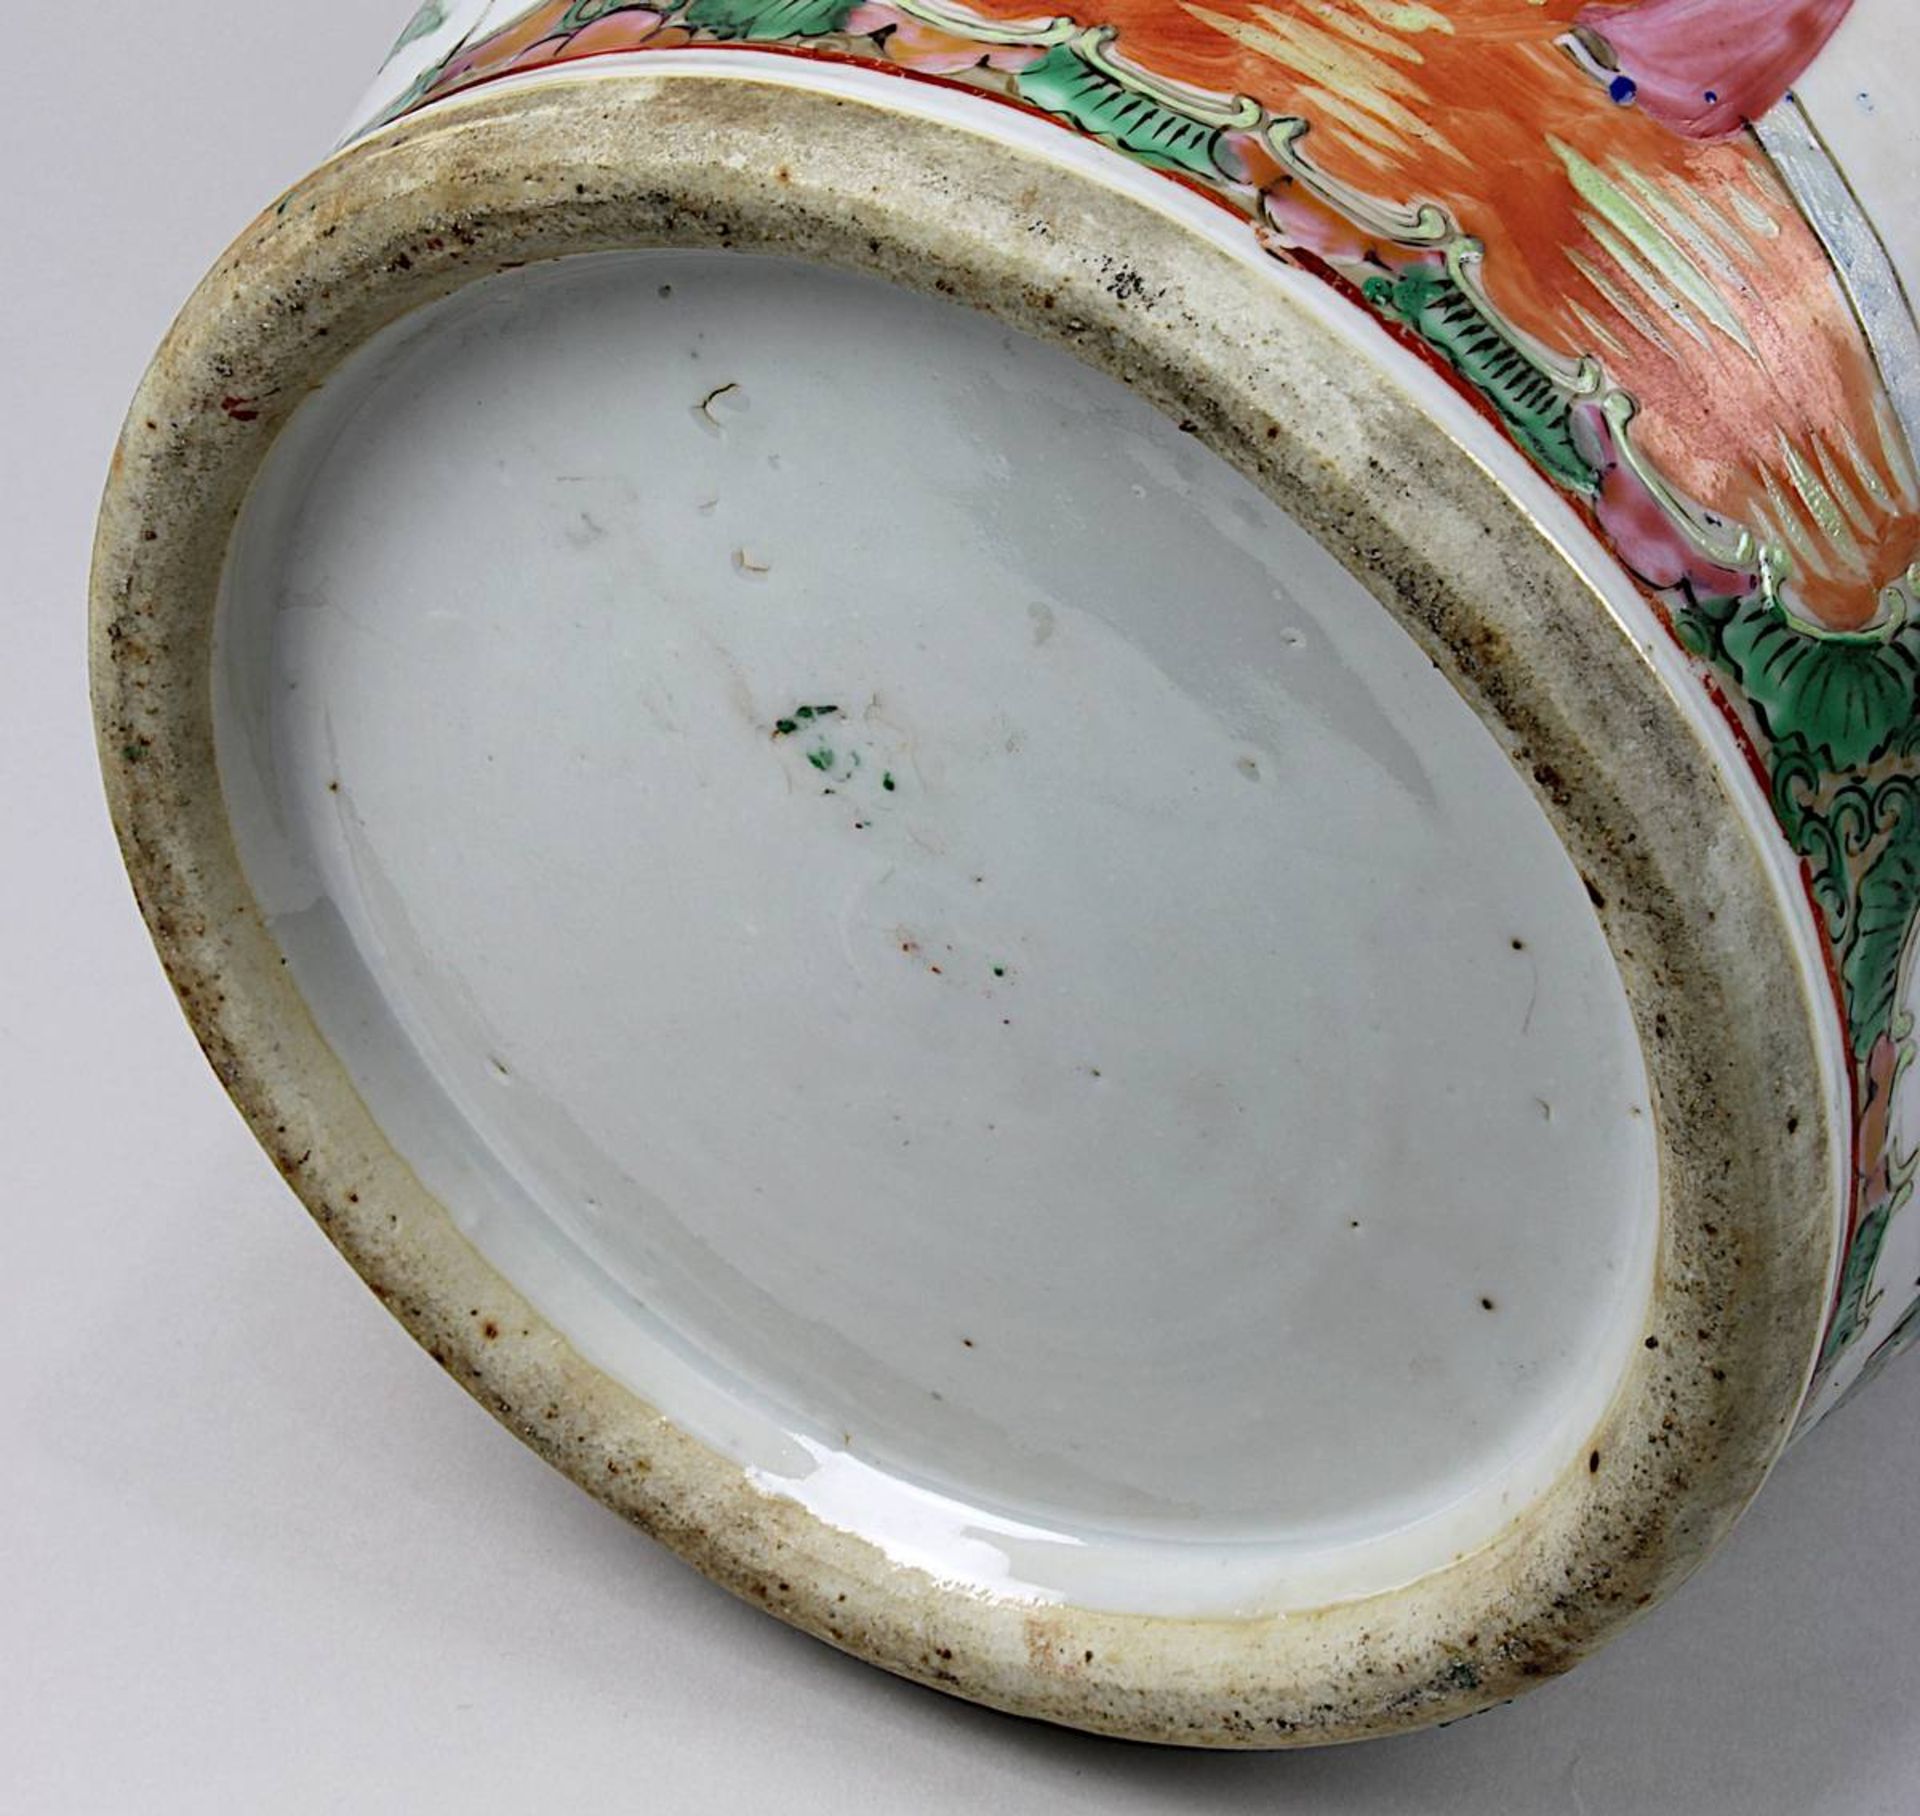 Paar Vasen famille rose, China 19. Jh., Porzellan weißer Scherben, leicht seladonfarben glasiert, - Bild 5 aus 6